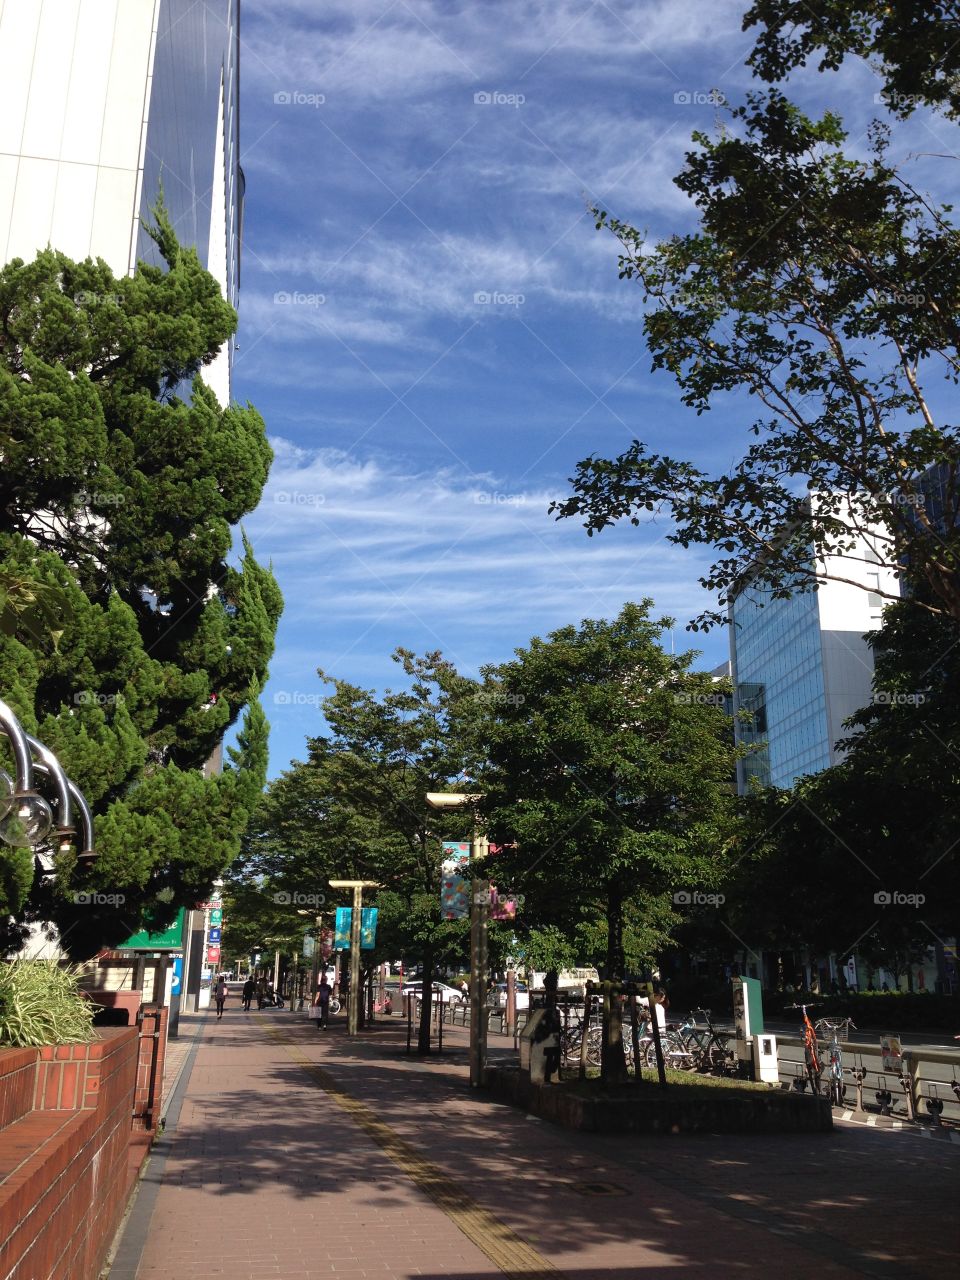 Fukuoka city